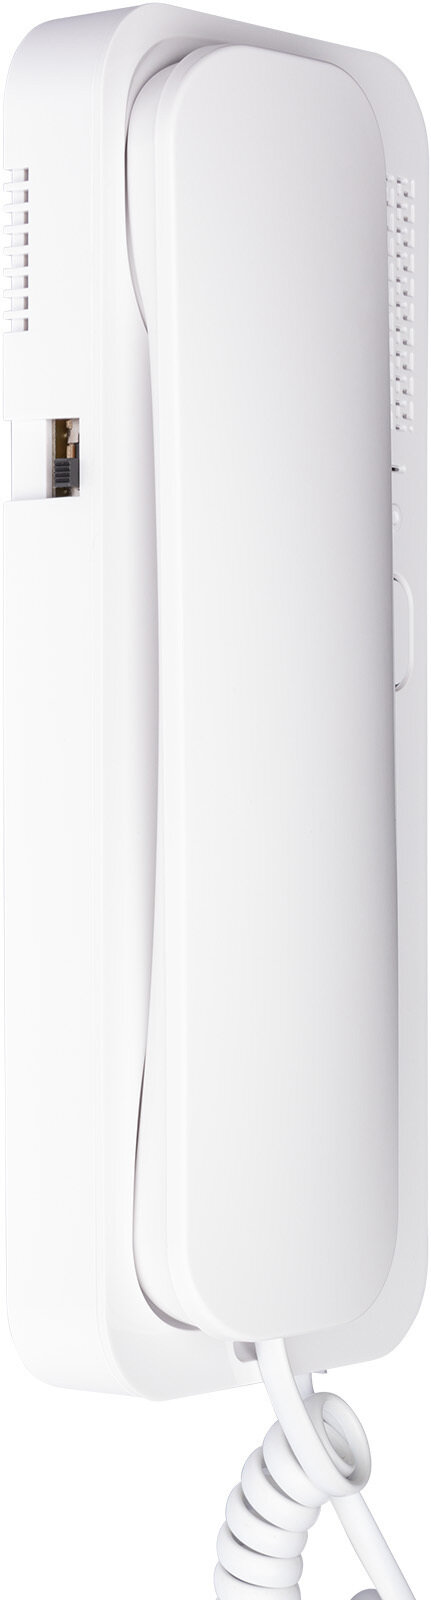 Трубка домофона Unifon Smart U цвет белый